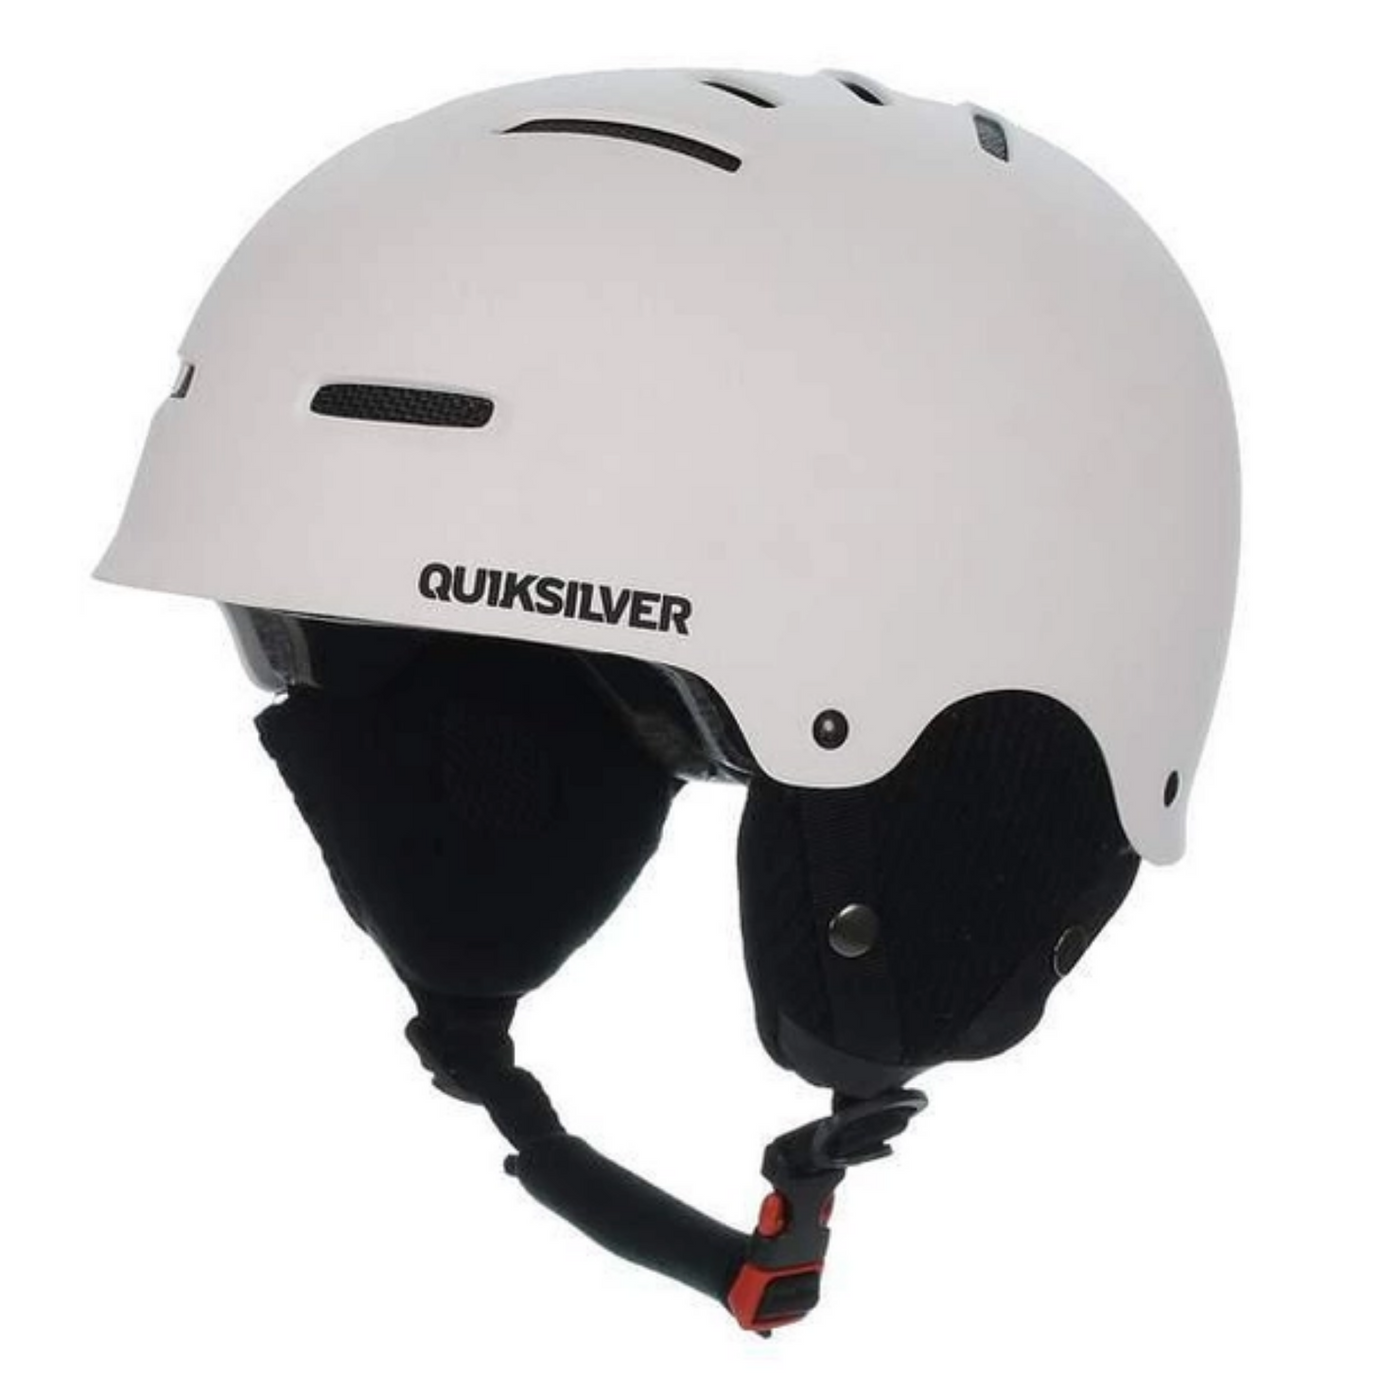 Quiksilver Gravity Snow Helmet - White